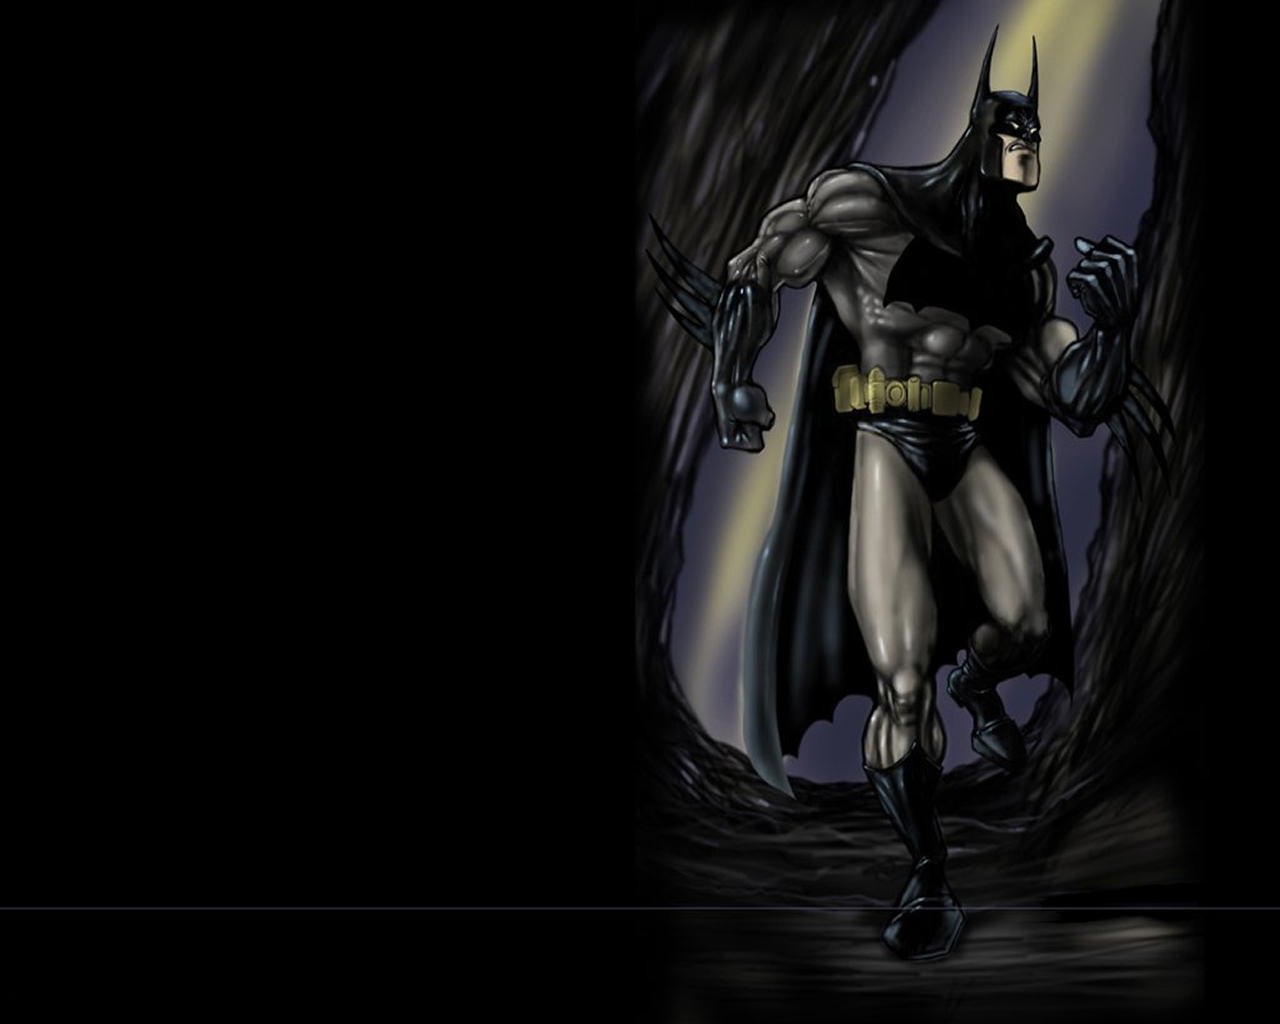 download wallpaper: Batman wallpaper